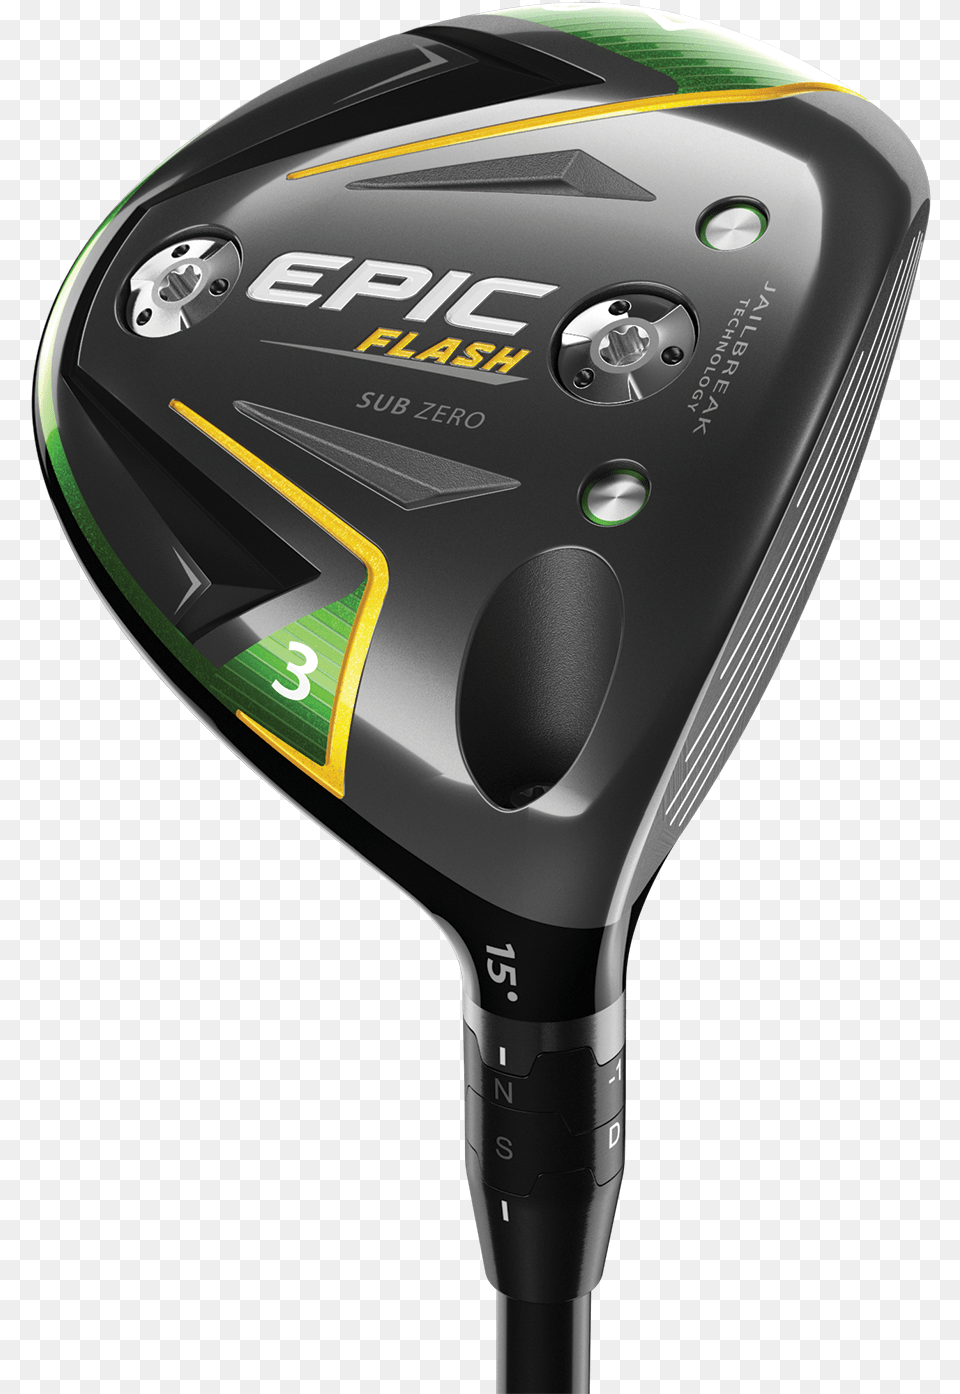 Epic Flash Sub Zero Callaway Epic Flash Fairway Wood, Golf, Golf Club, Sport, Electrical Device Free Png